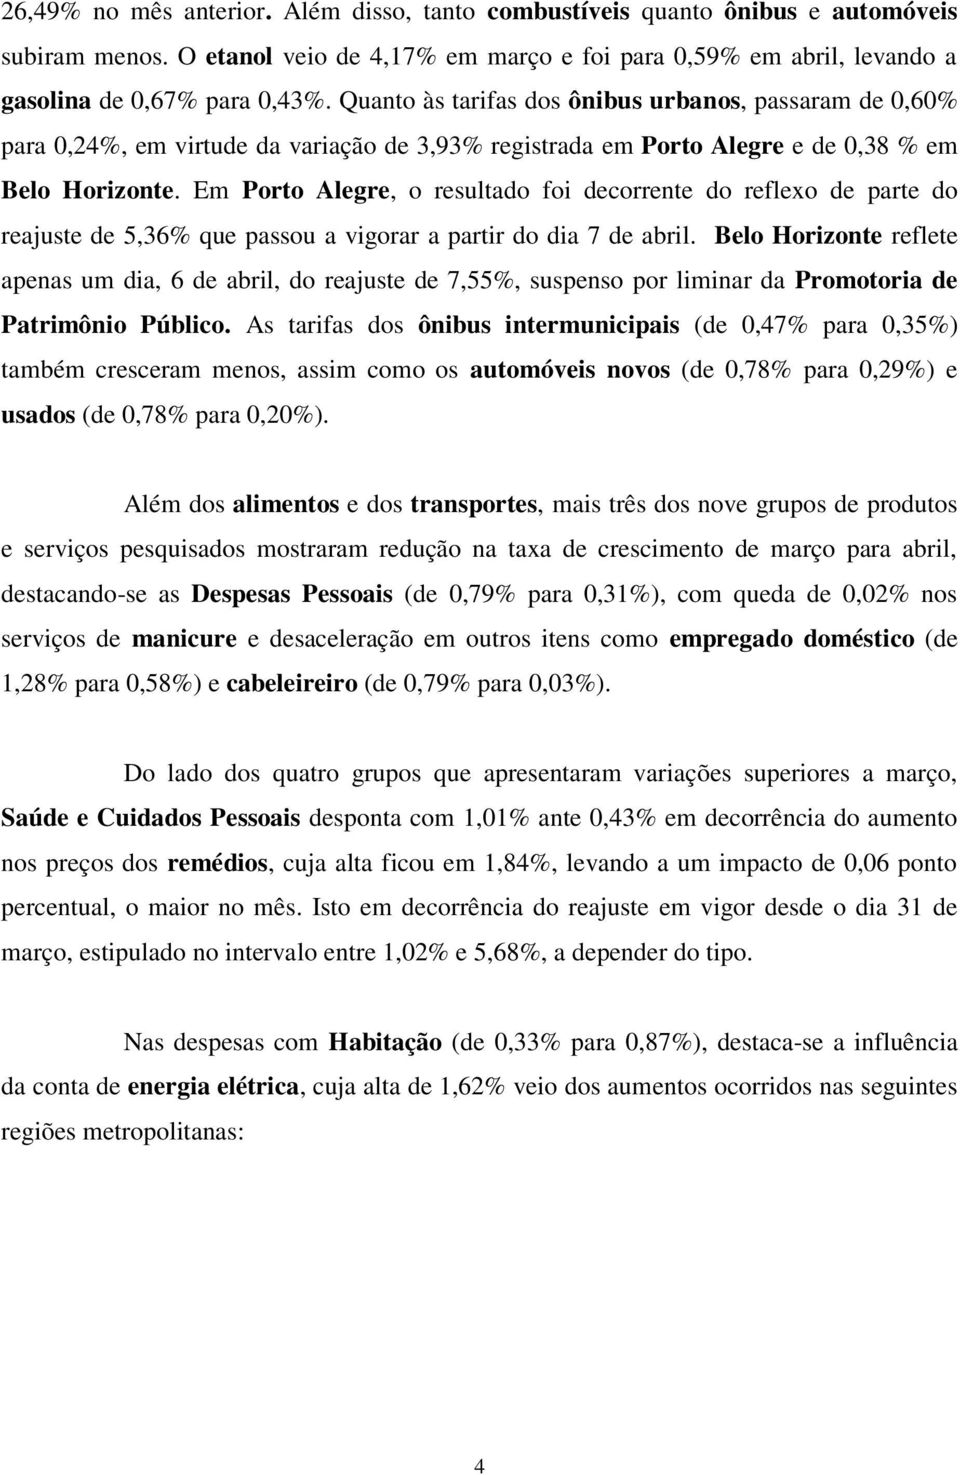 Em Porto Alegre, o resultado foi decorrente do reflexo de parte do reajuste de 5,36% que passou a vigorar a partir do dia 7 de abril.